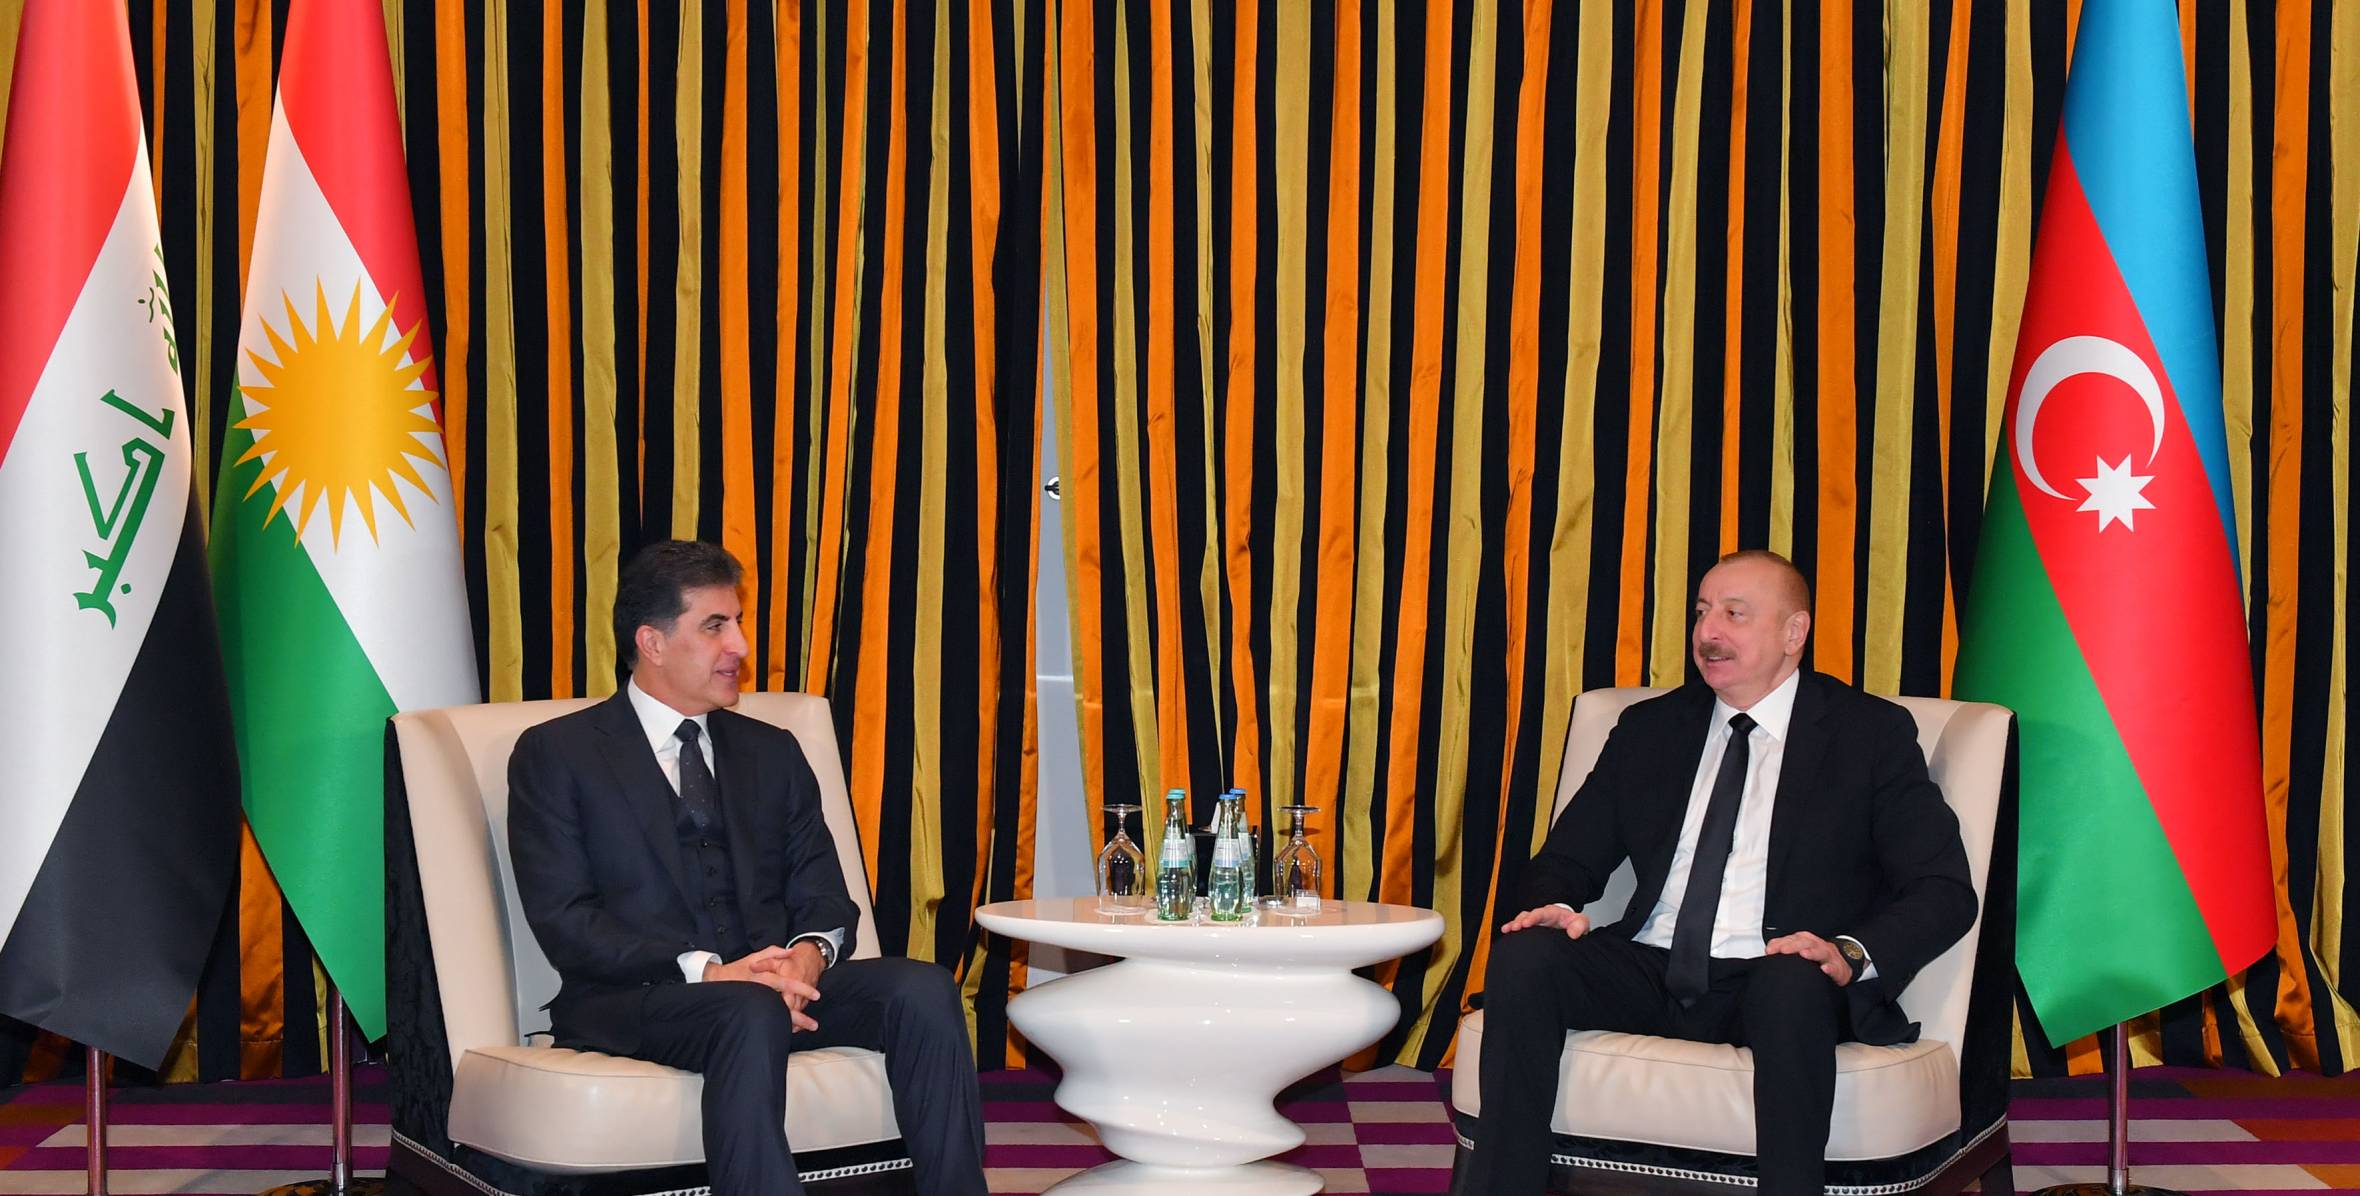 Ilham Aliyev met with President of Kurdistan Region of Iraq in Munich